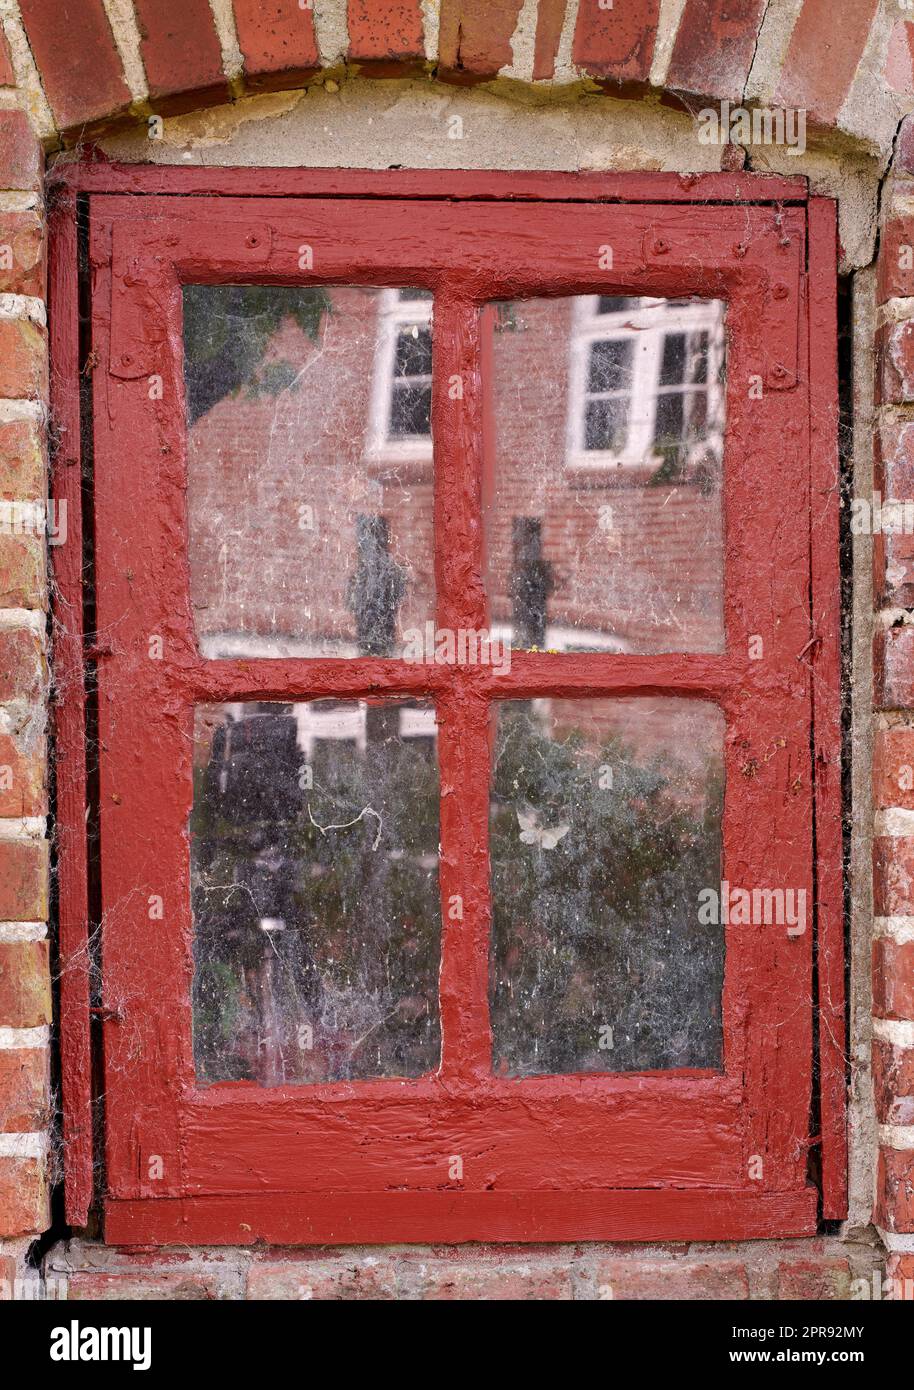 Primo piano di una vecchia finestra sporca in una casa di mattoni rossi. Ammira il battente con struttura in legno rosso su un edificio storico con texture di vernice sbalorditiva. Macro dettagli esterni del davanzale in una città tradizionale Foto Stock